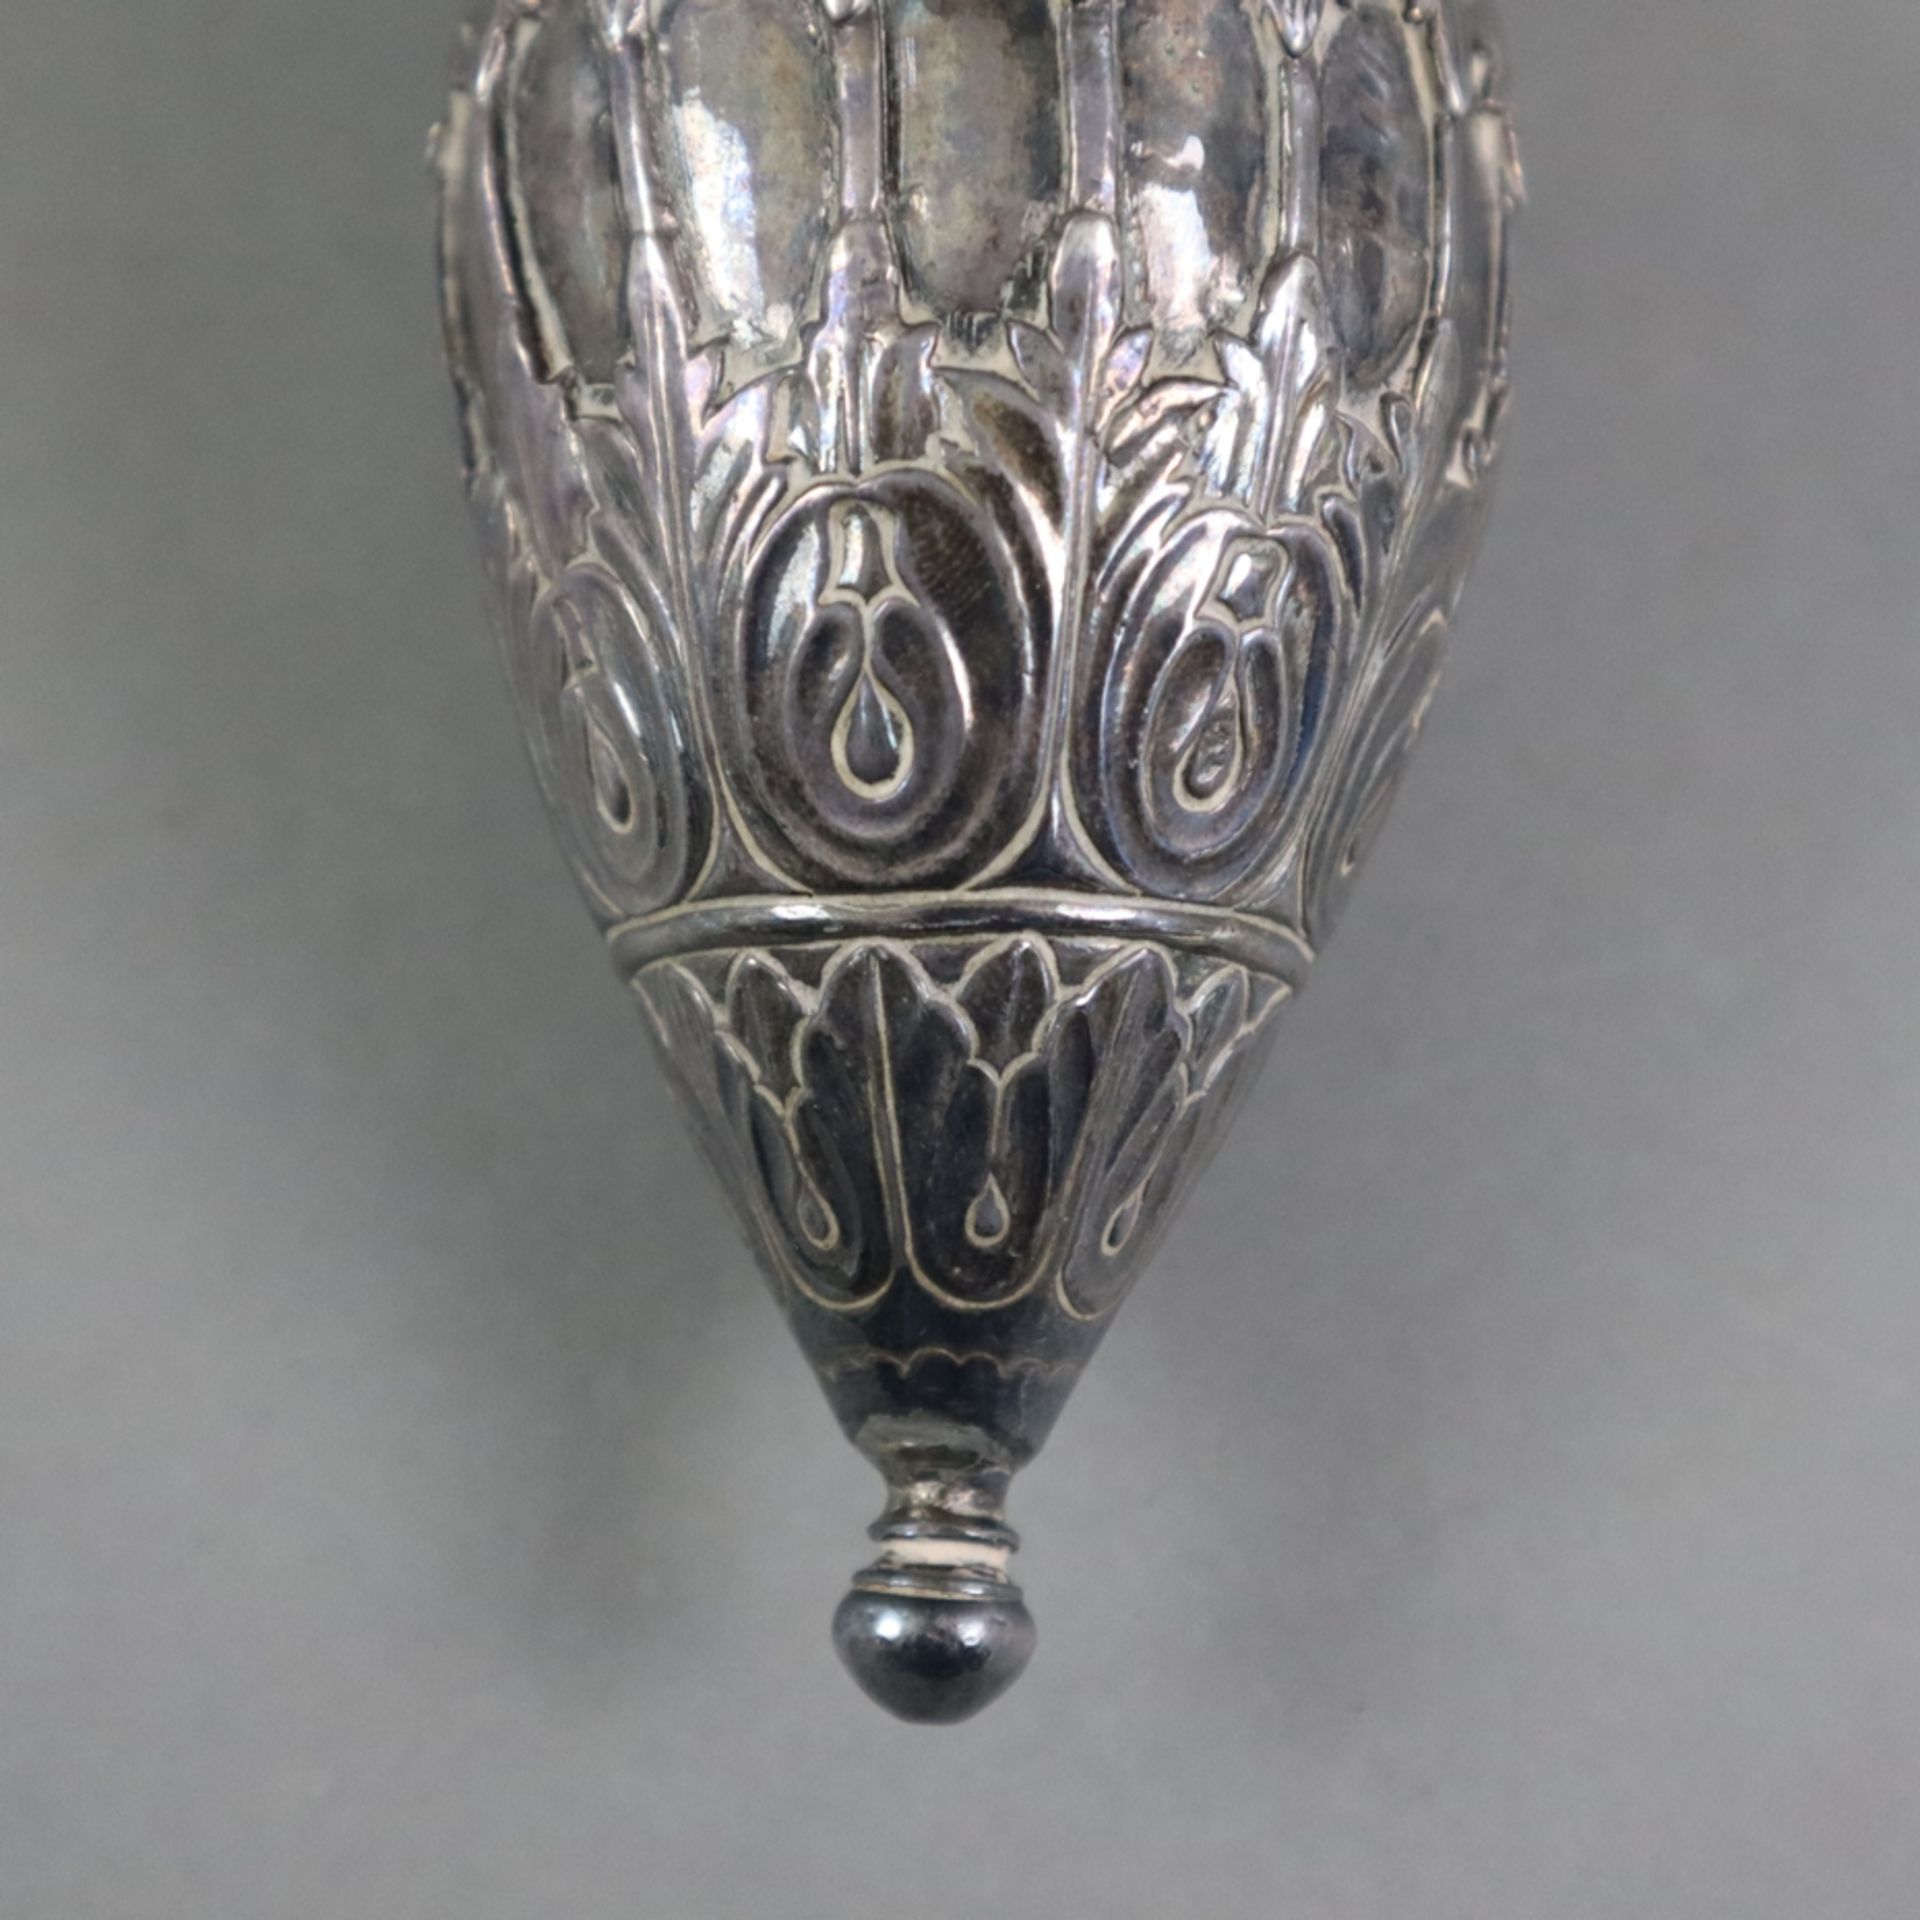 Orientalisches Hookah-Gefäß - wohl Indien, Moghul-Stil, Metall, versilbert, eiförmige Hookah-Körper - Image 5 of 5